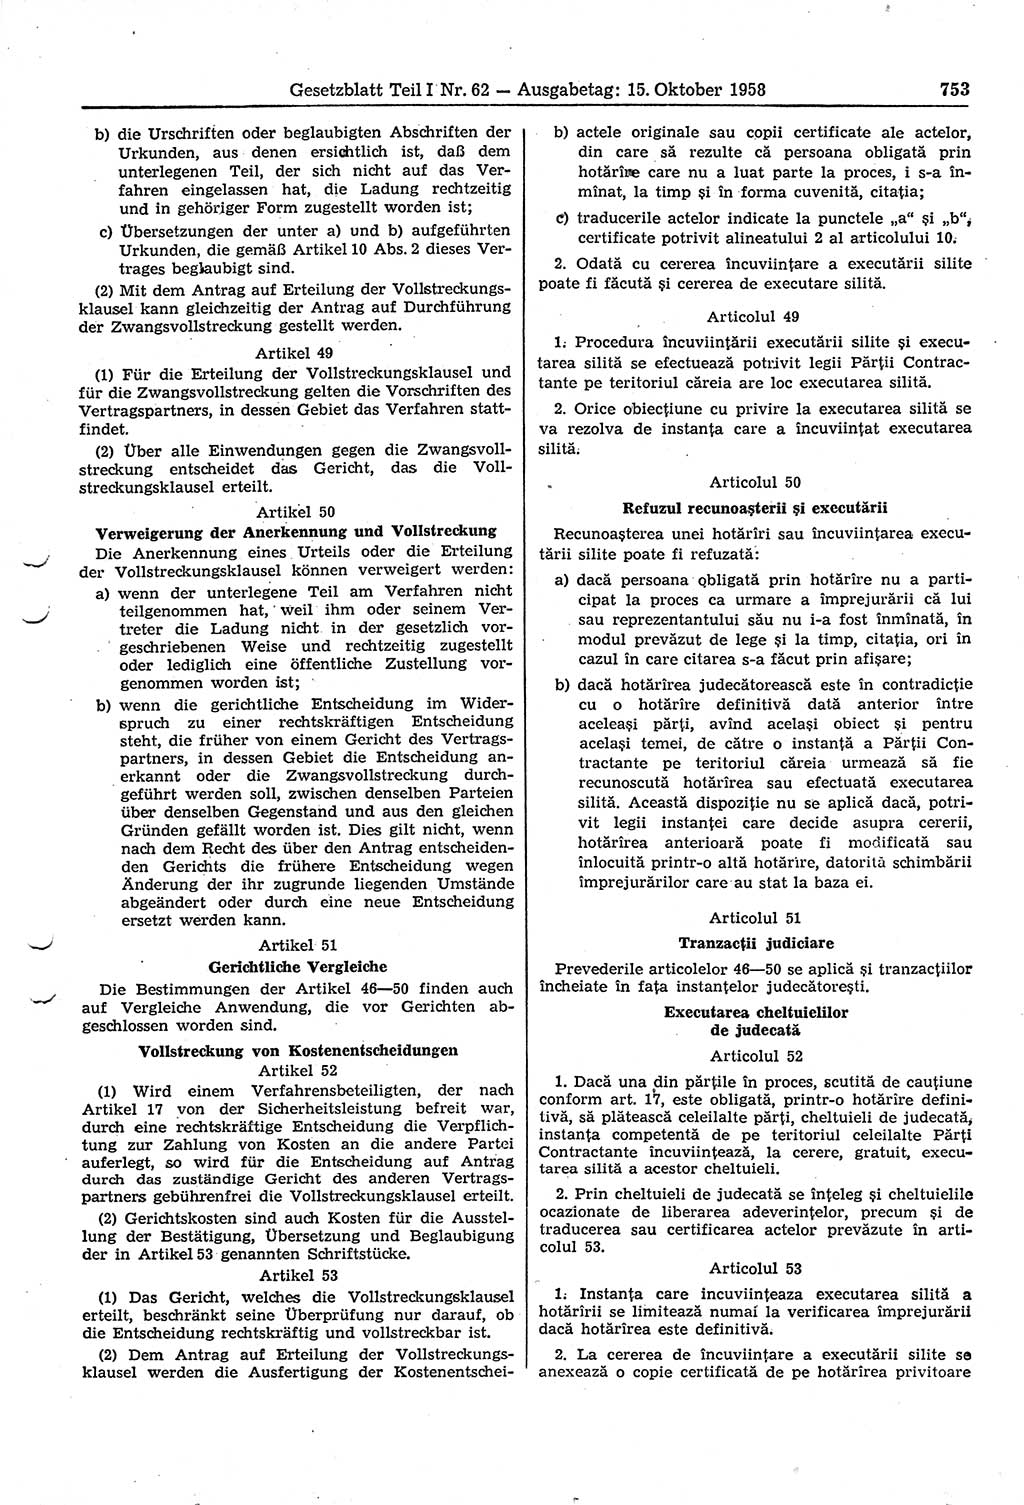 Gesetzblatt (GBl.) der Deutschen Demokratischen Republik (DDR) Teil Ⅰ 1958, Seite 753 (GBl. DDR Ⅰ 1958, S. 753)